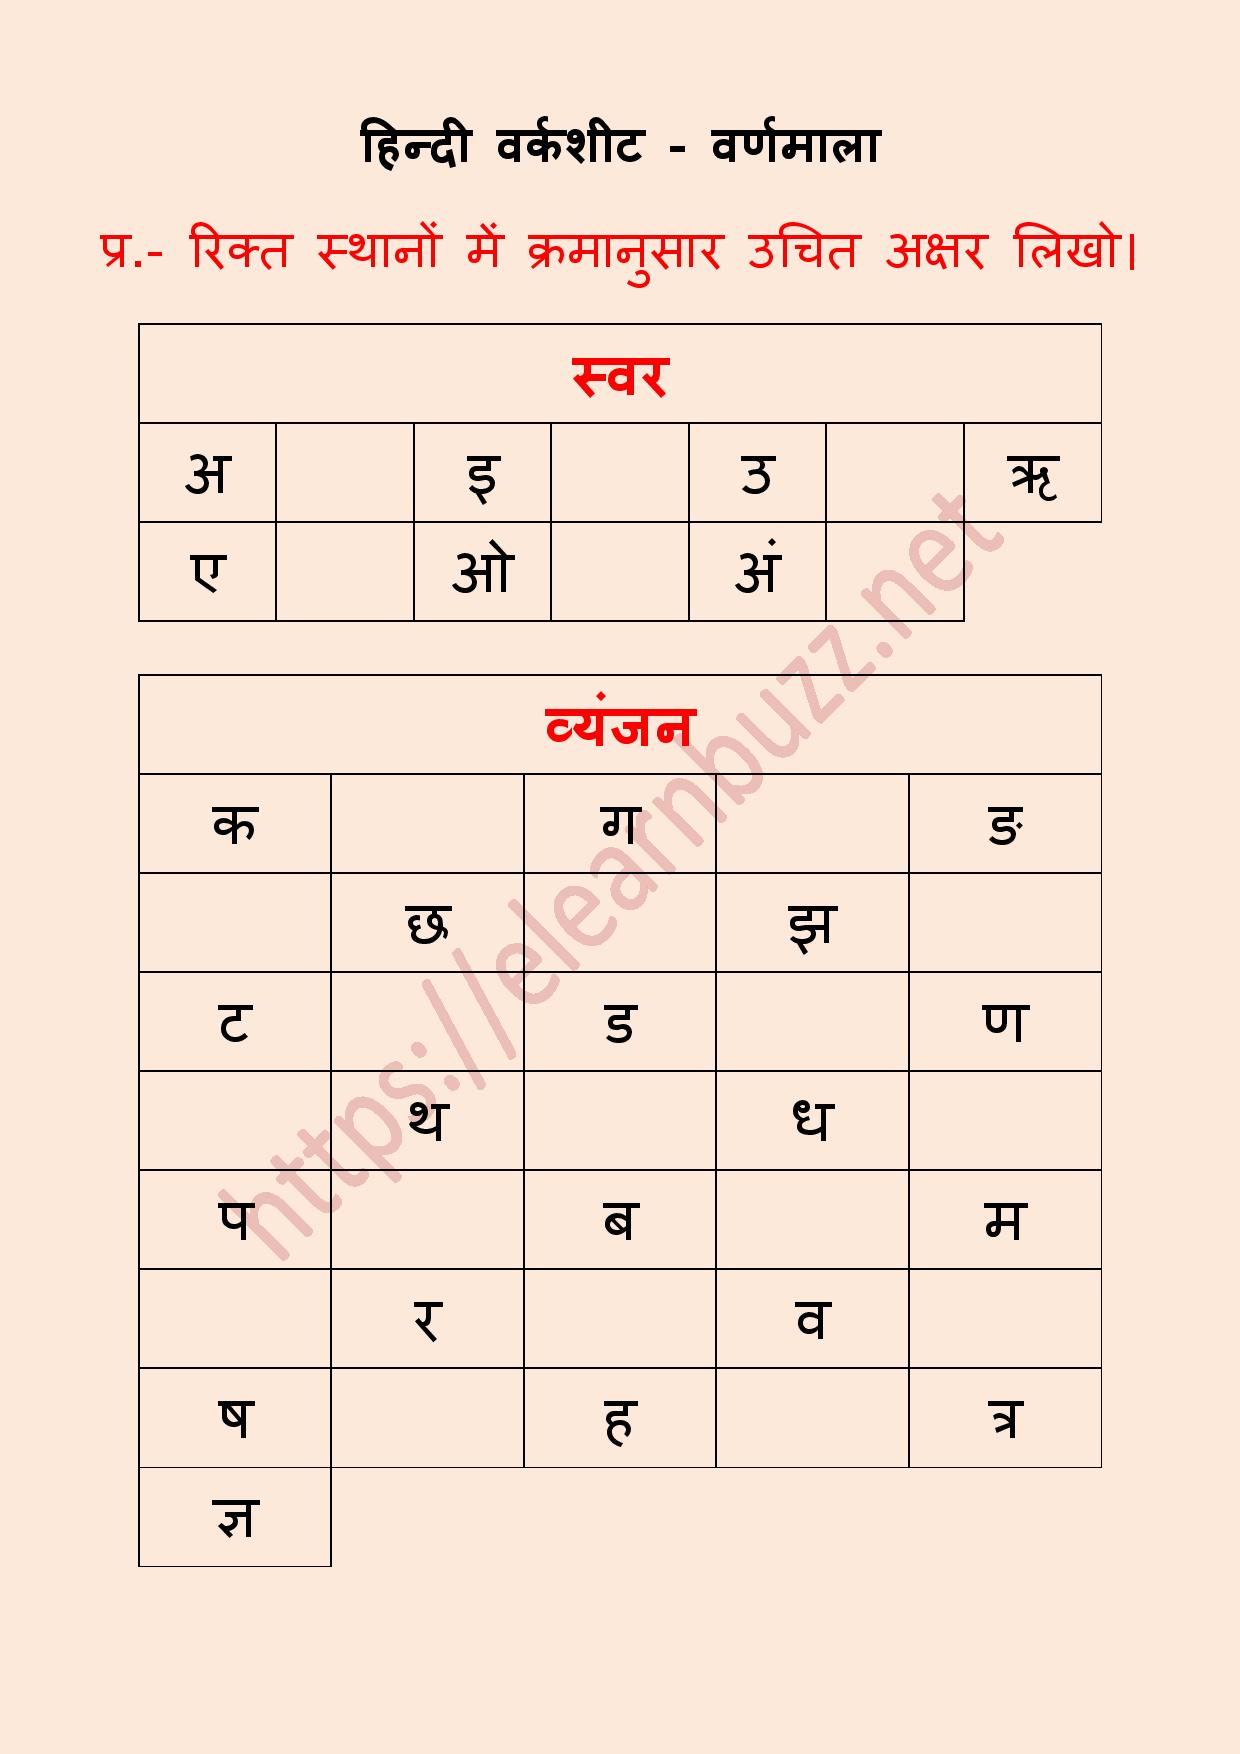 21-hindi-varnamala-ideas-hindi-worksheets-learn-hindi-hindi-images